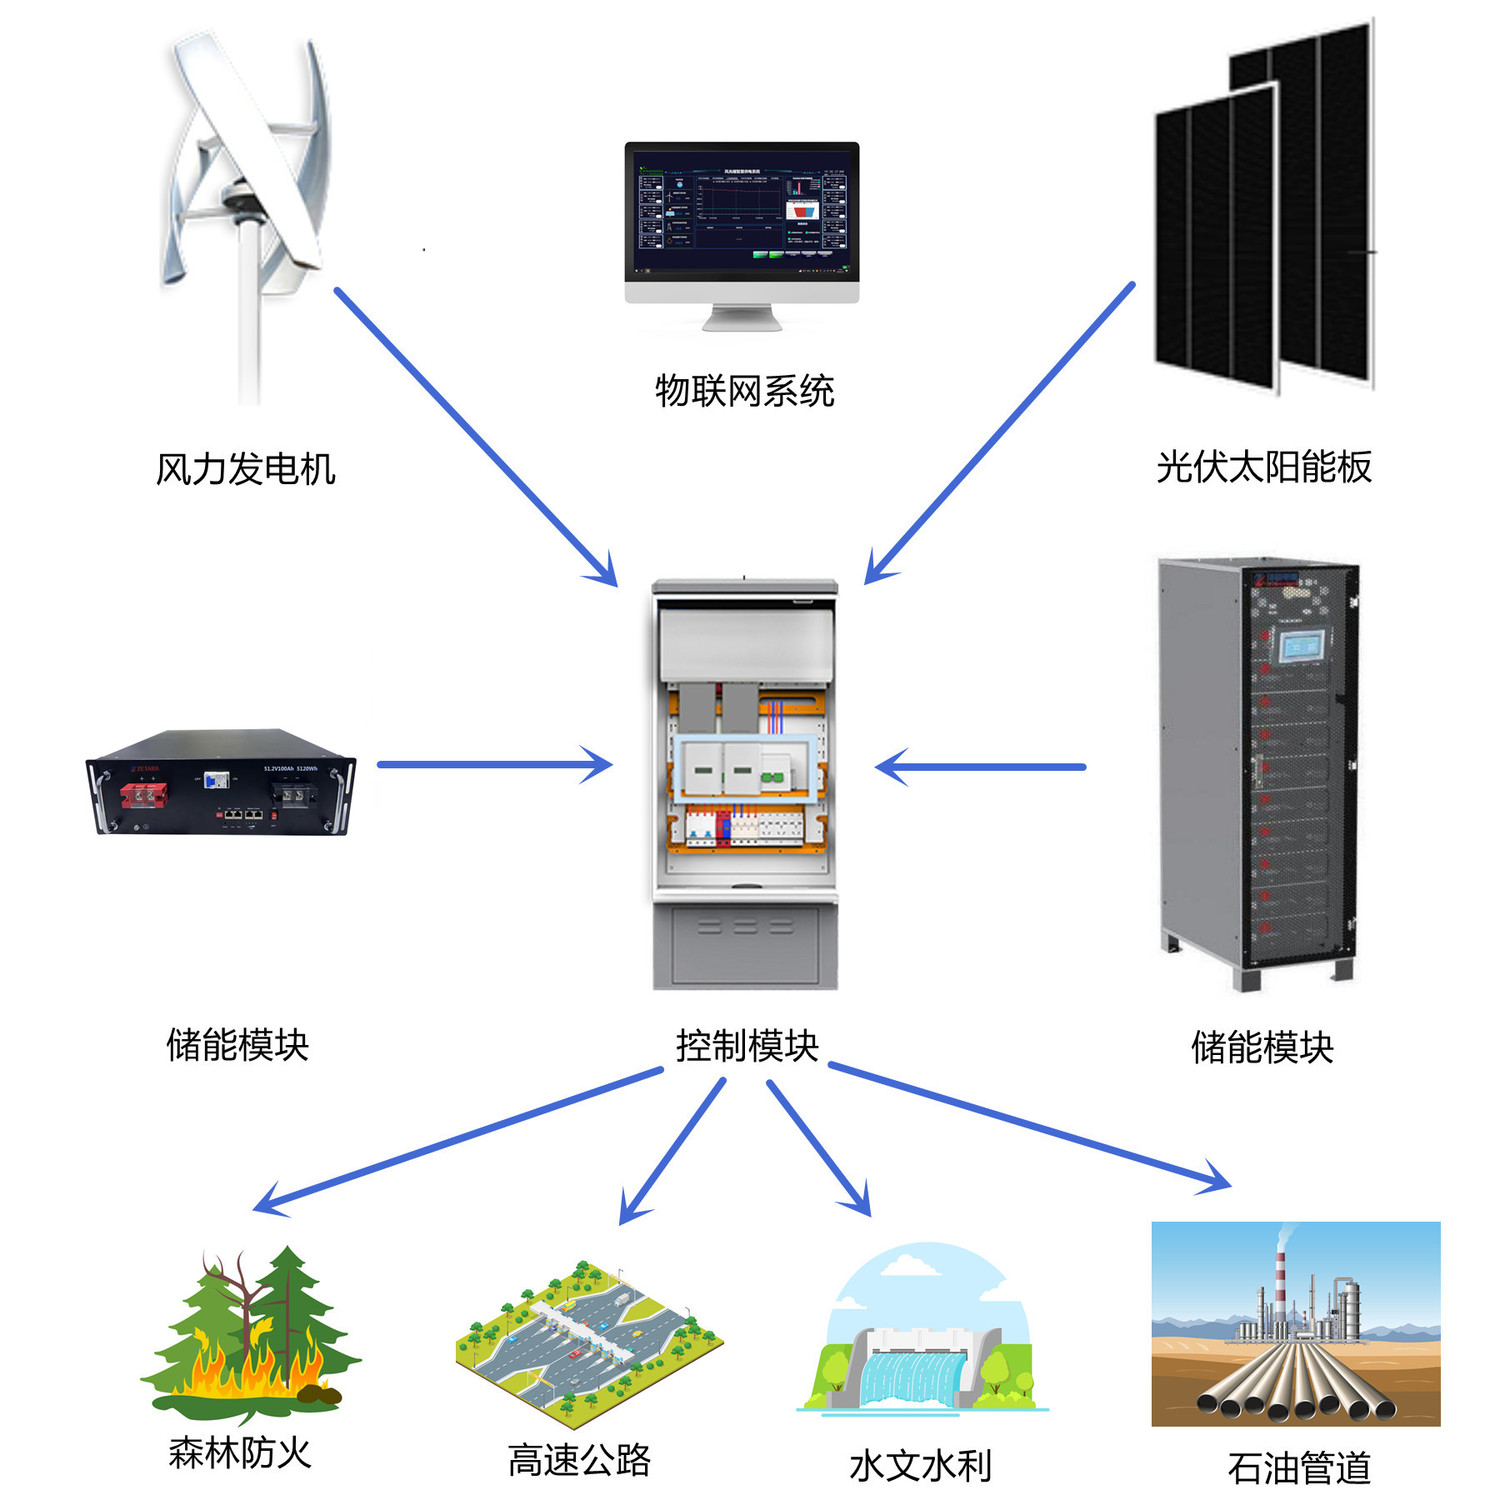 广州尚能丨风光储智慧物联监控系统